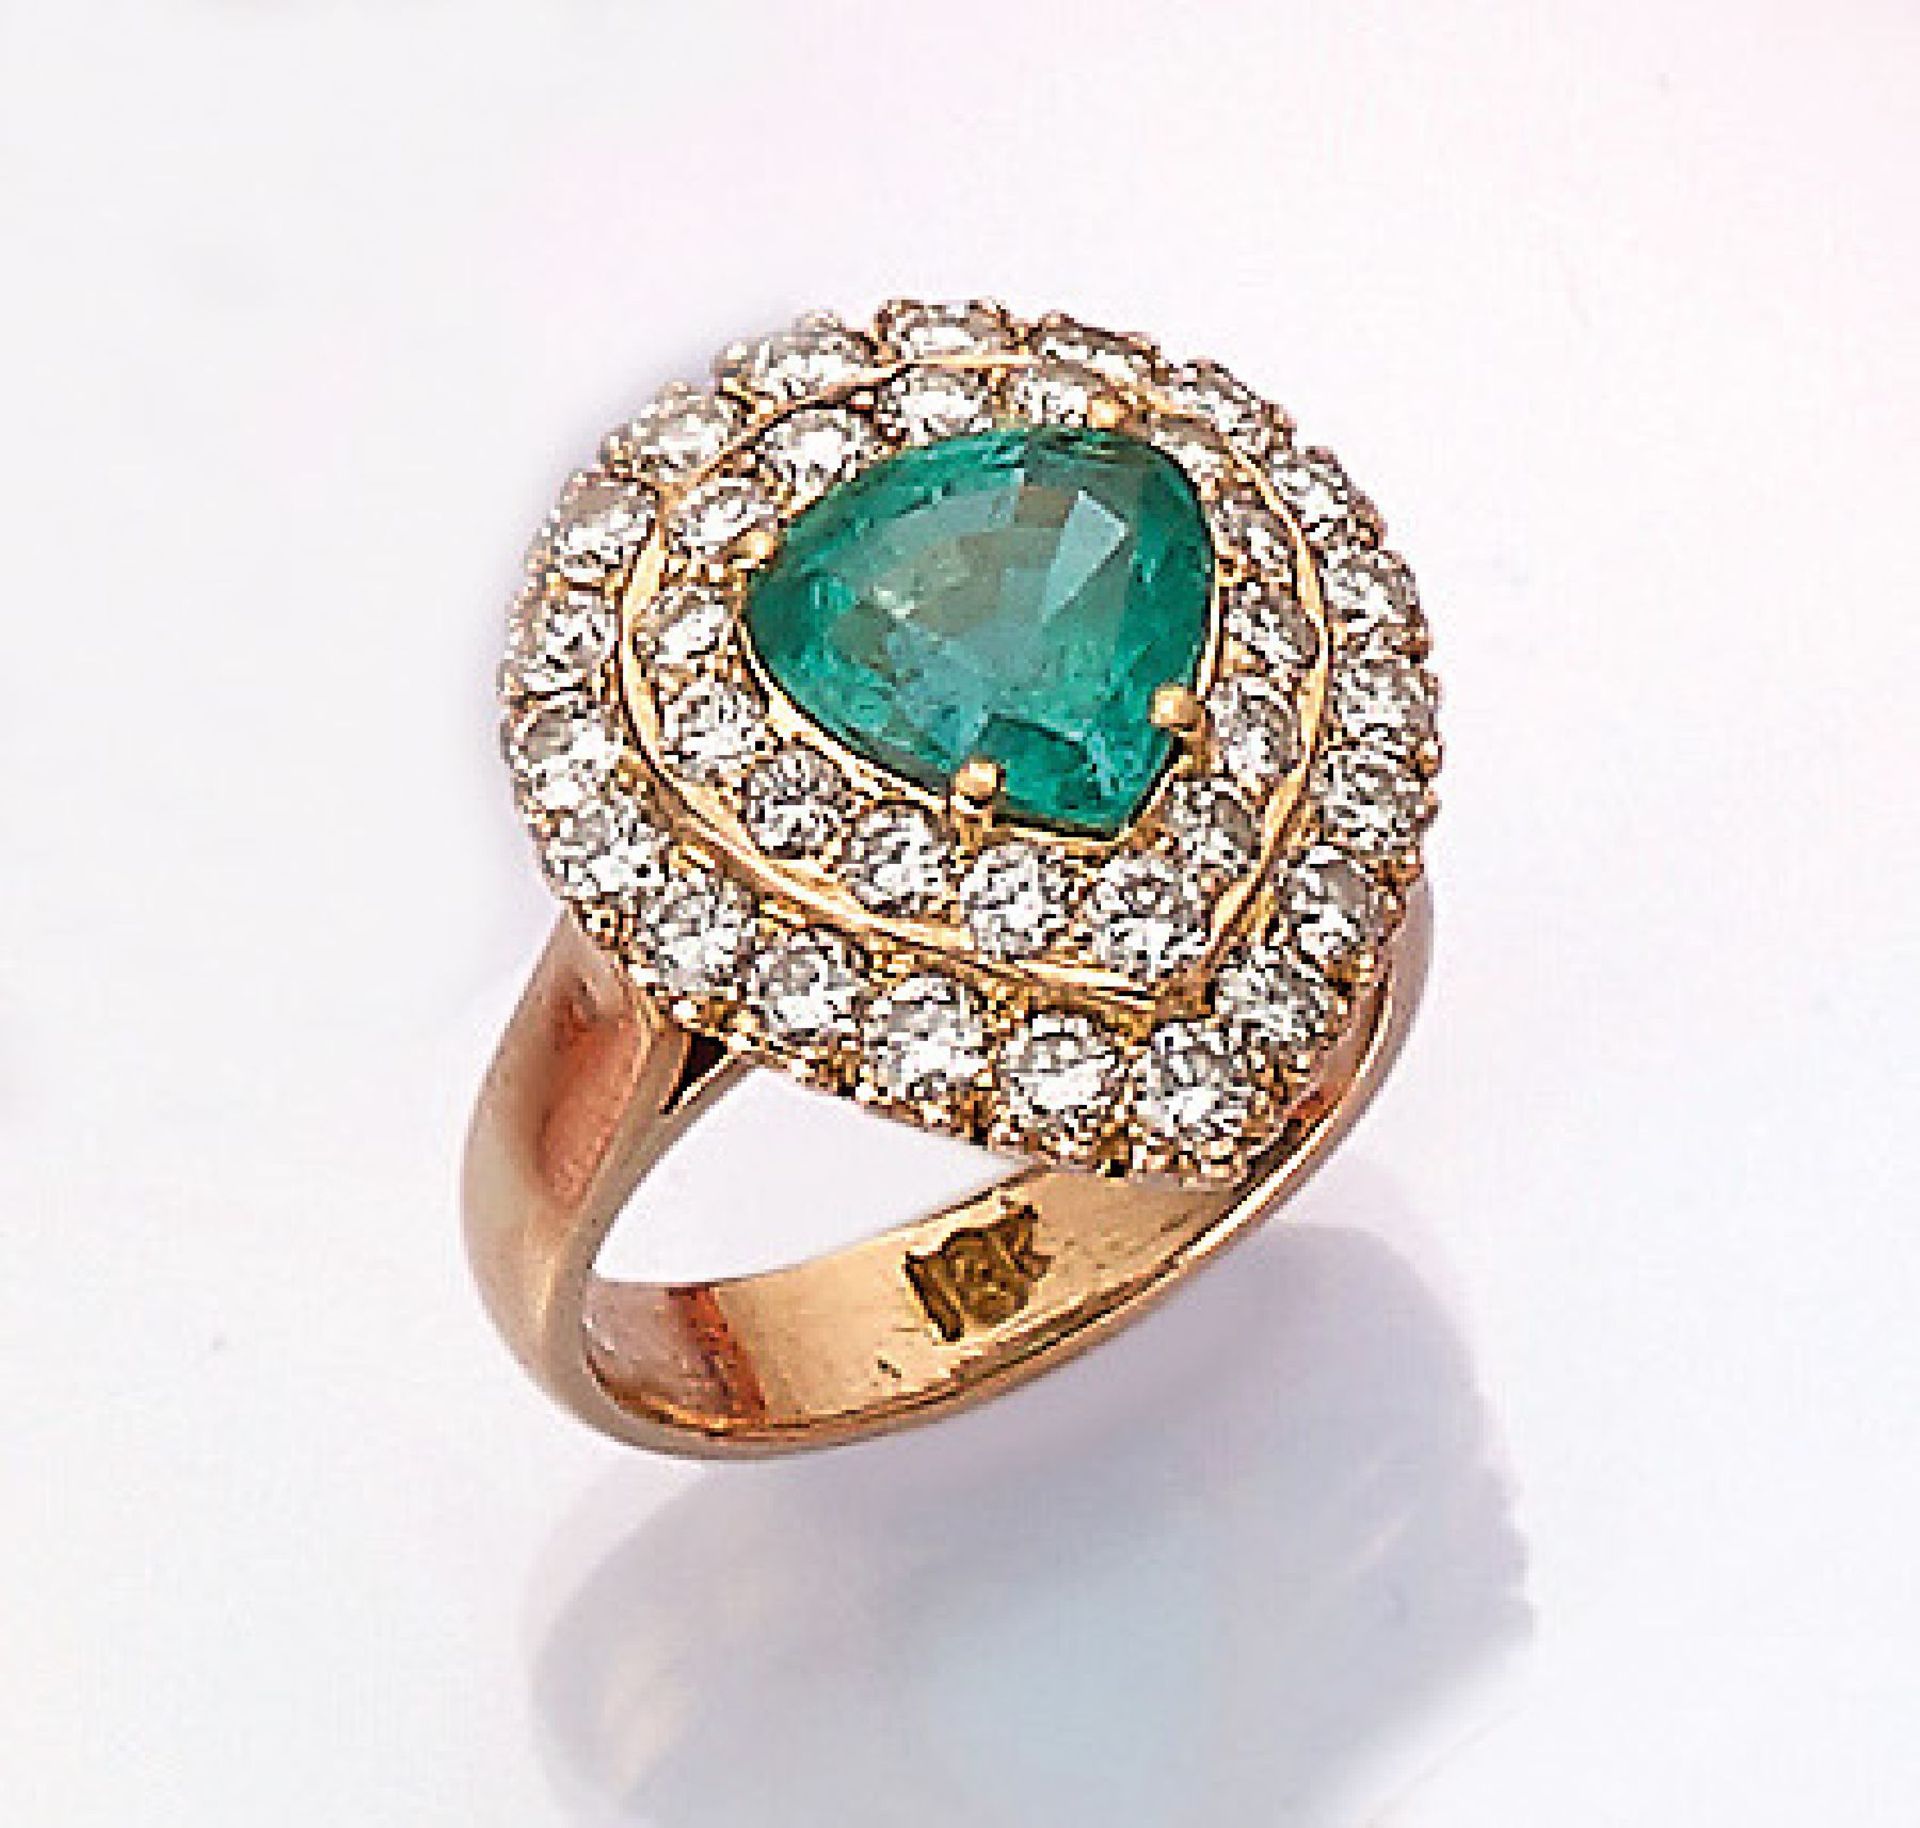 18 kt Gold Ring mit Smaragd und Brillanten, RoseG 750/000, mittig tropfenf. facett. Smaragd ca. 2.